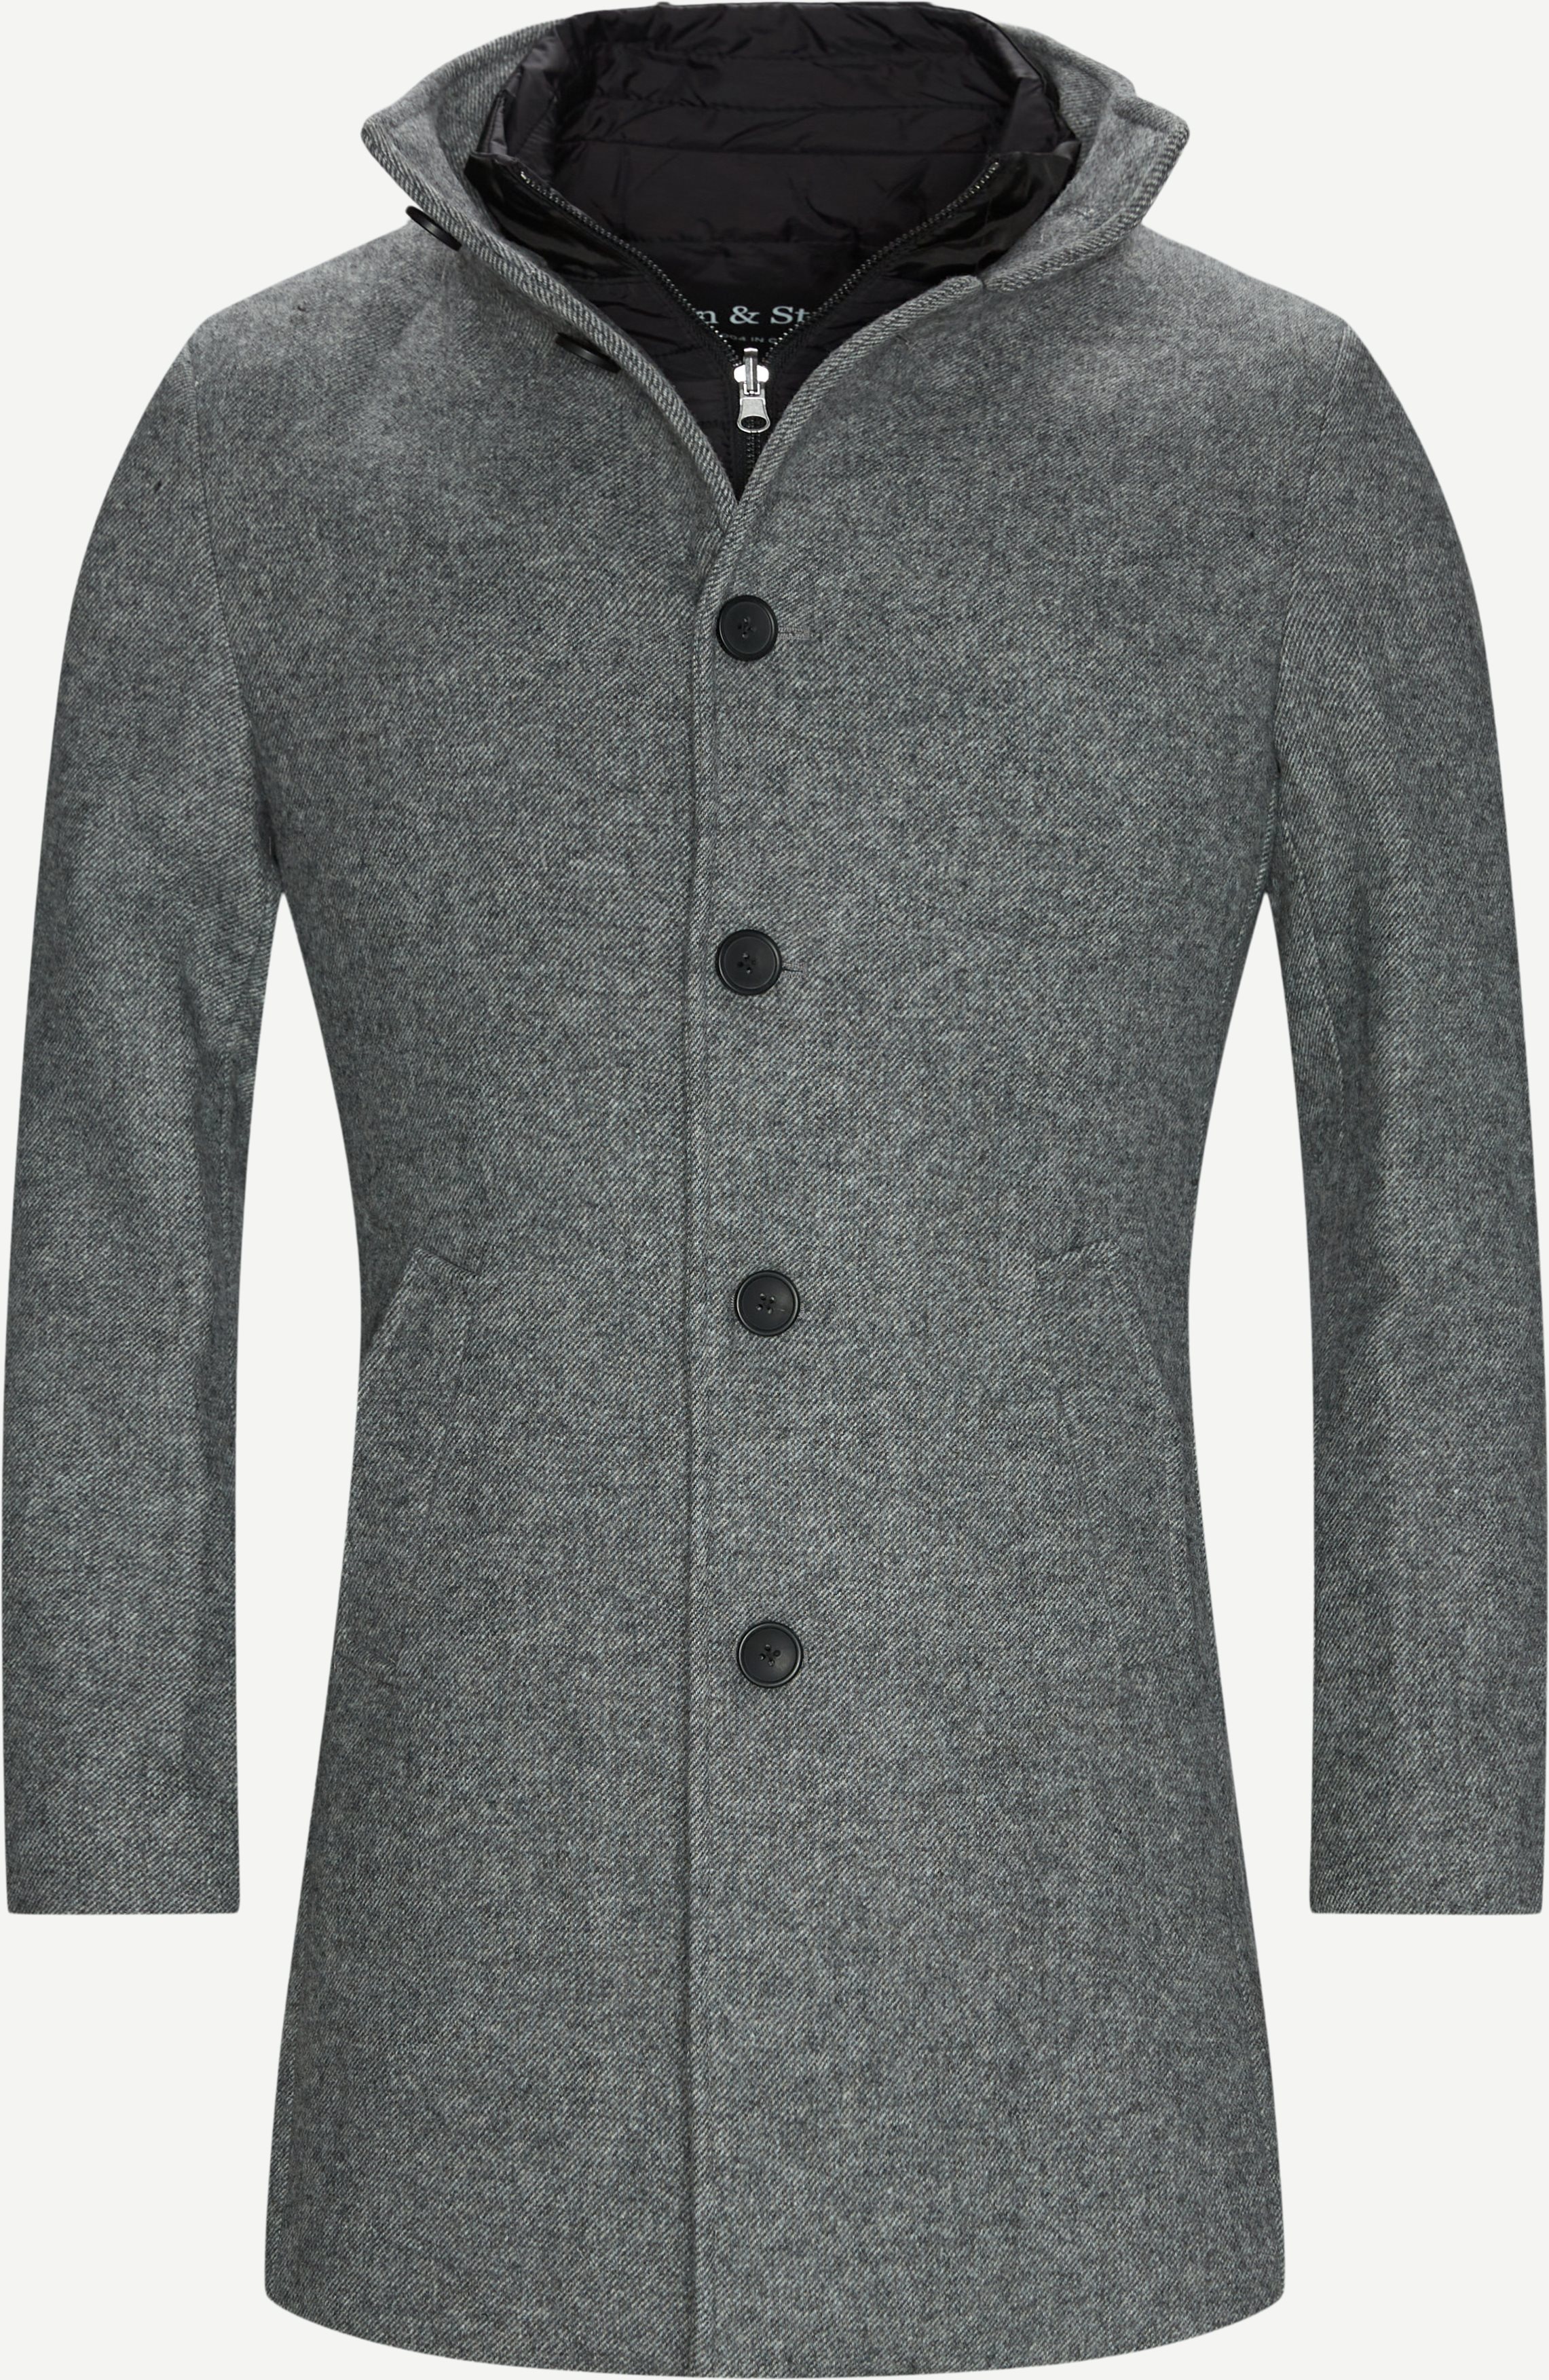 Ontario Wool Coat - Jackor - Slim fit - Grå